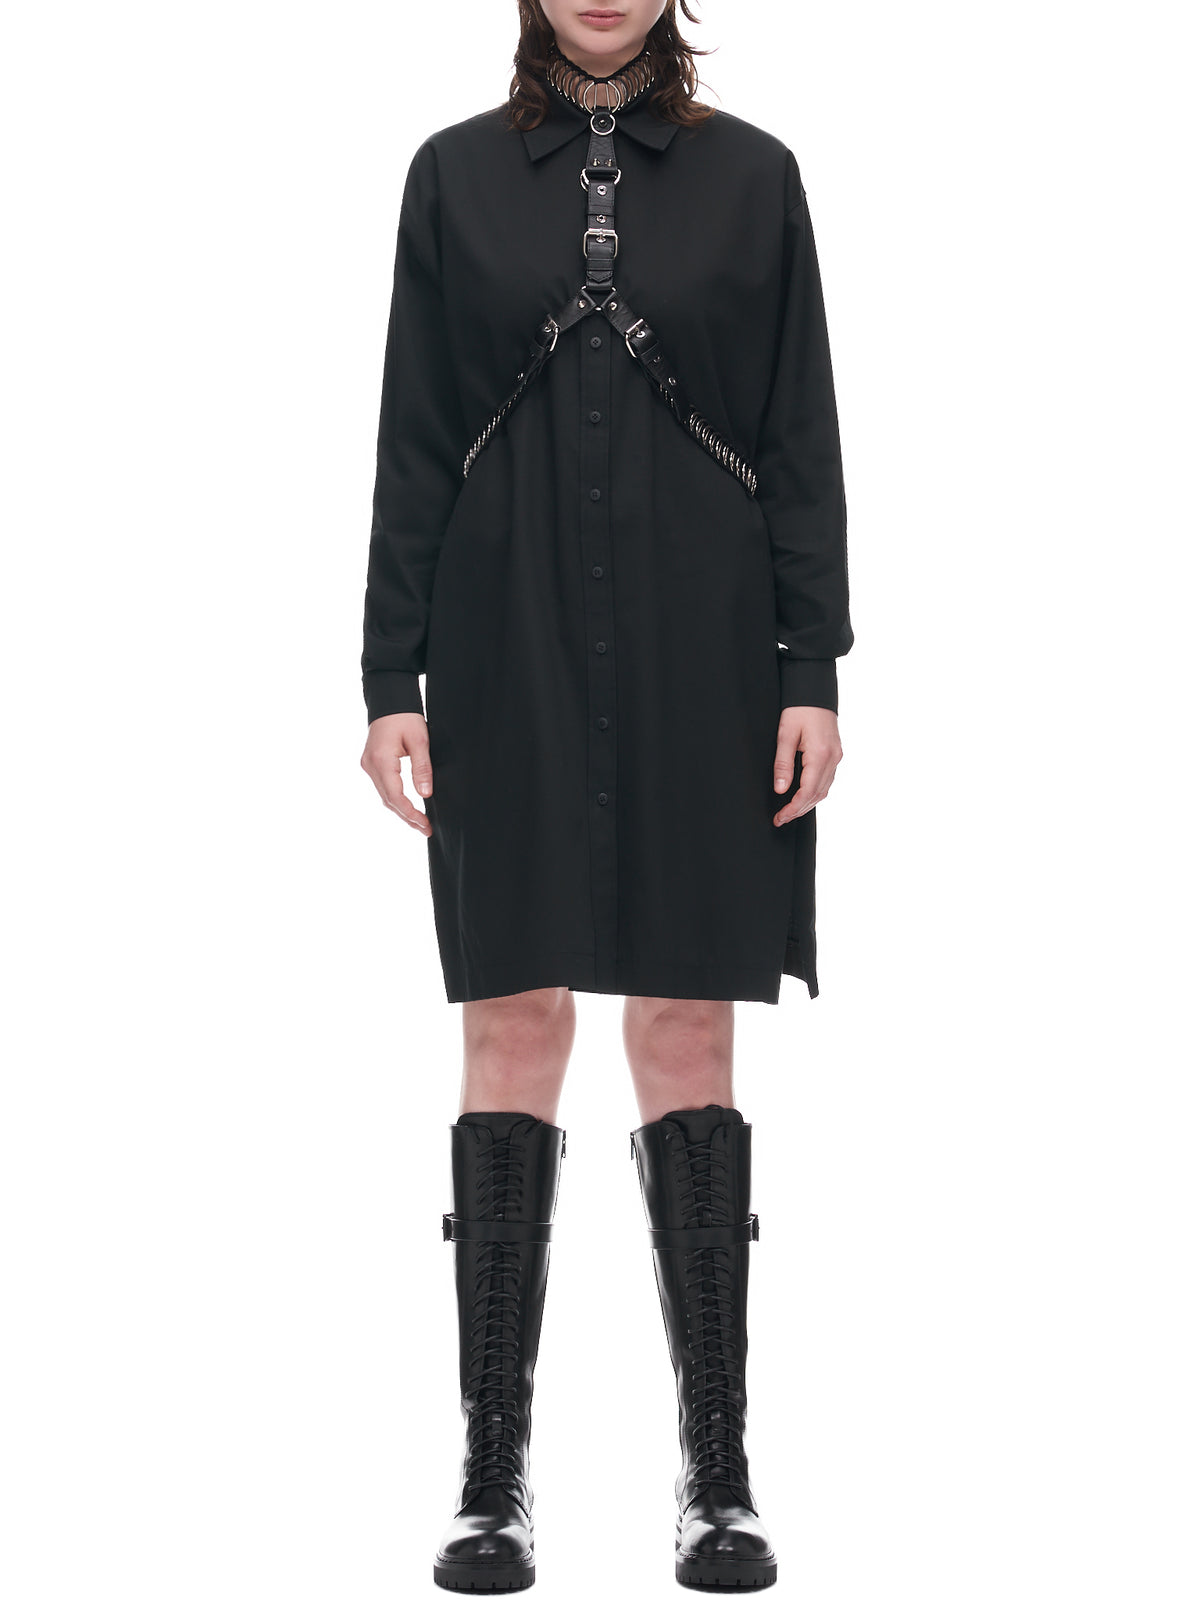 Harness Dress (23WD01-BLACK)